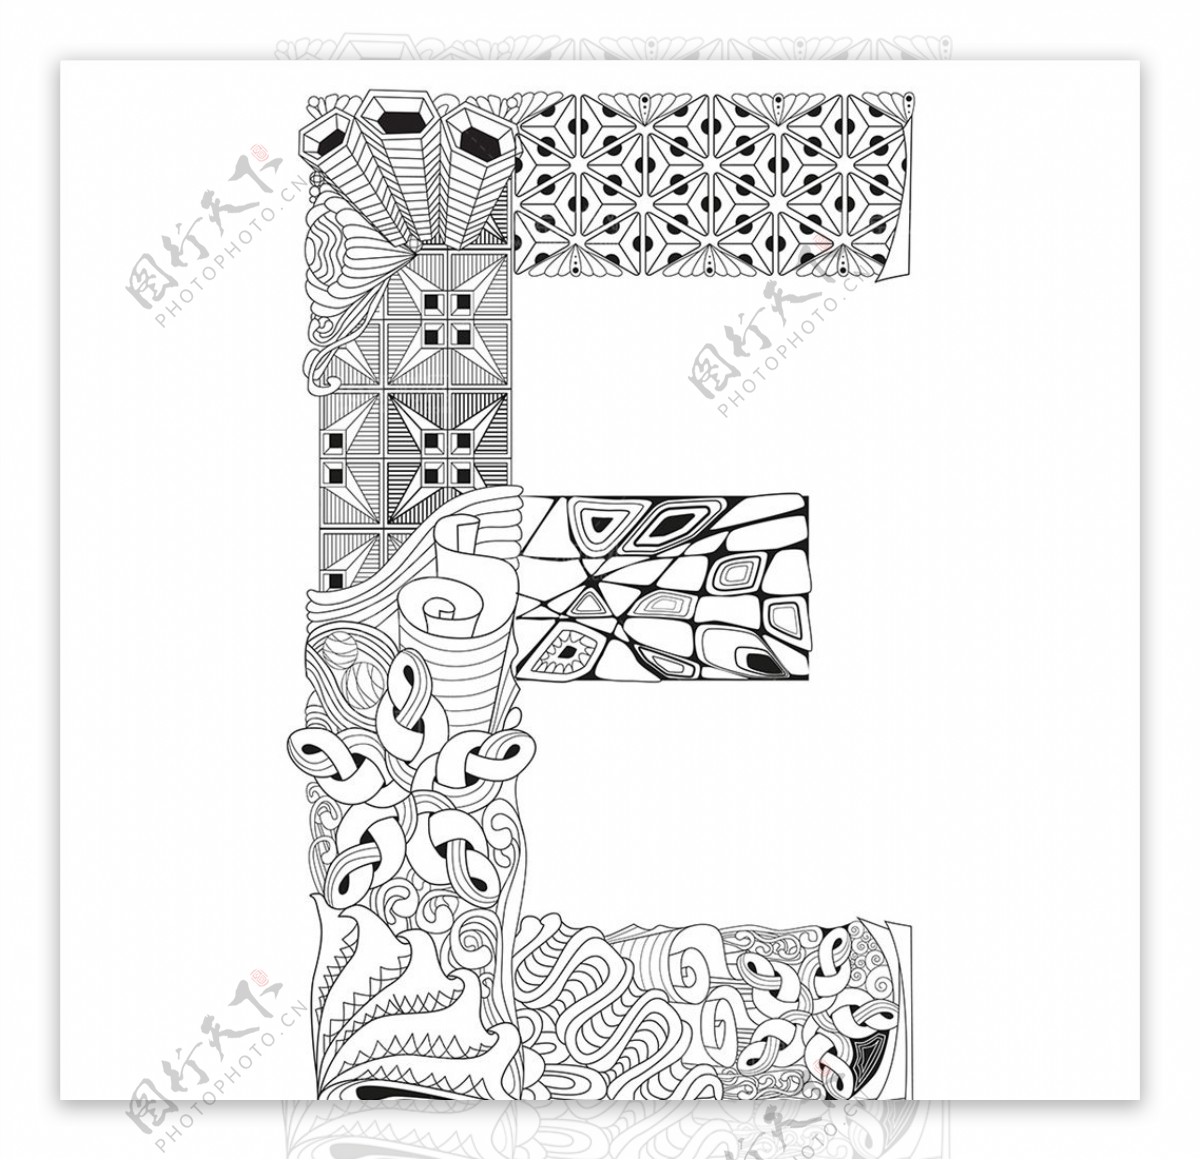 抽象创意花纹字母E